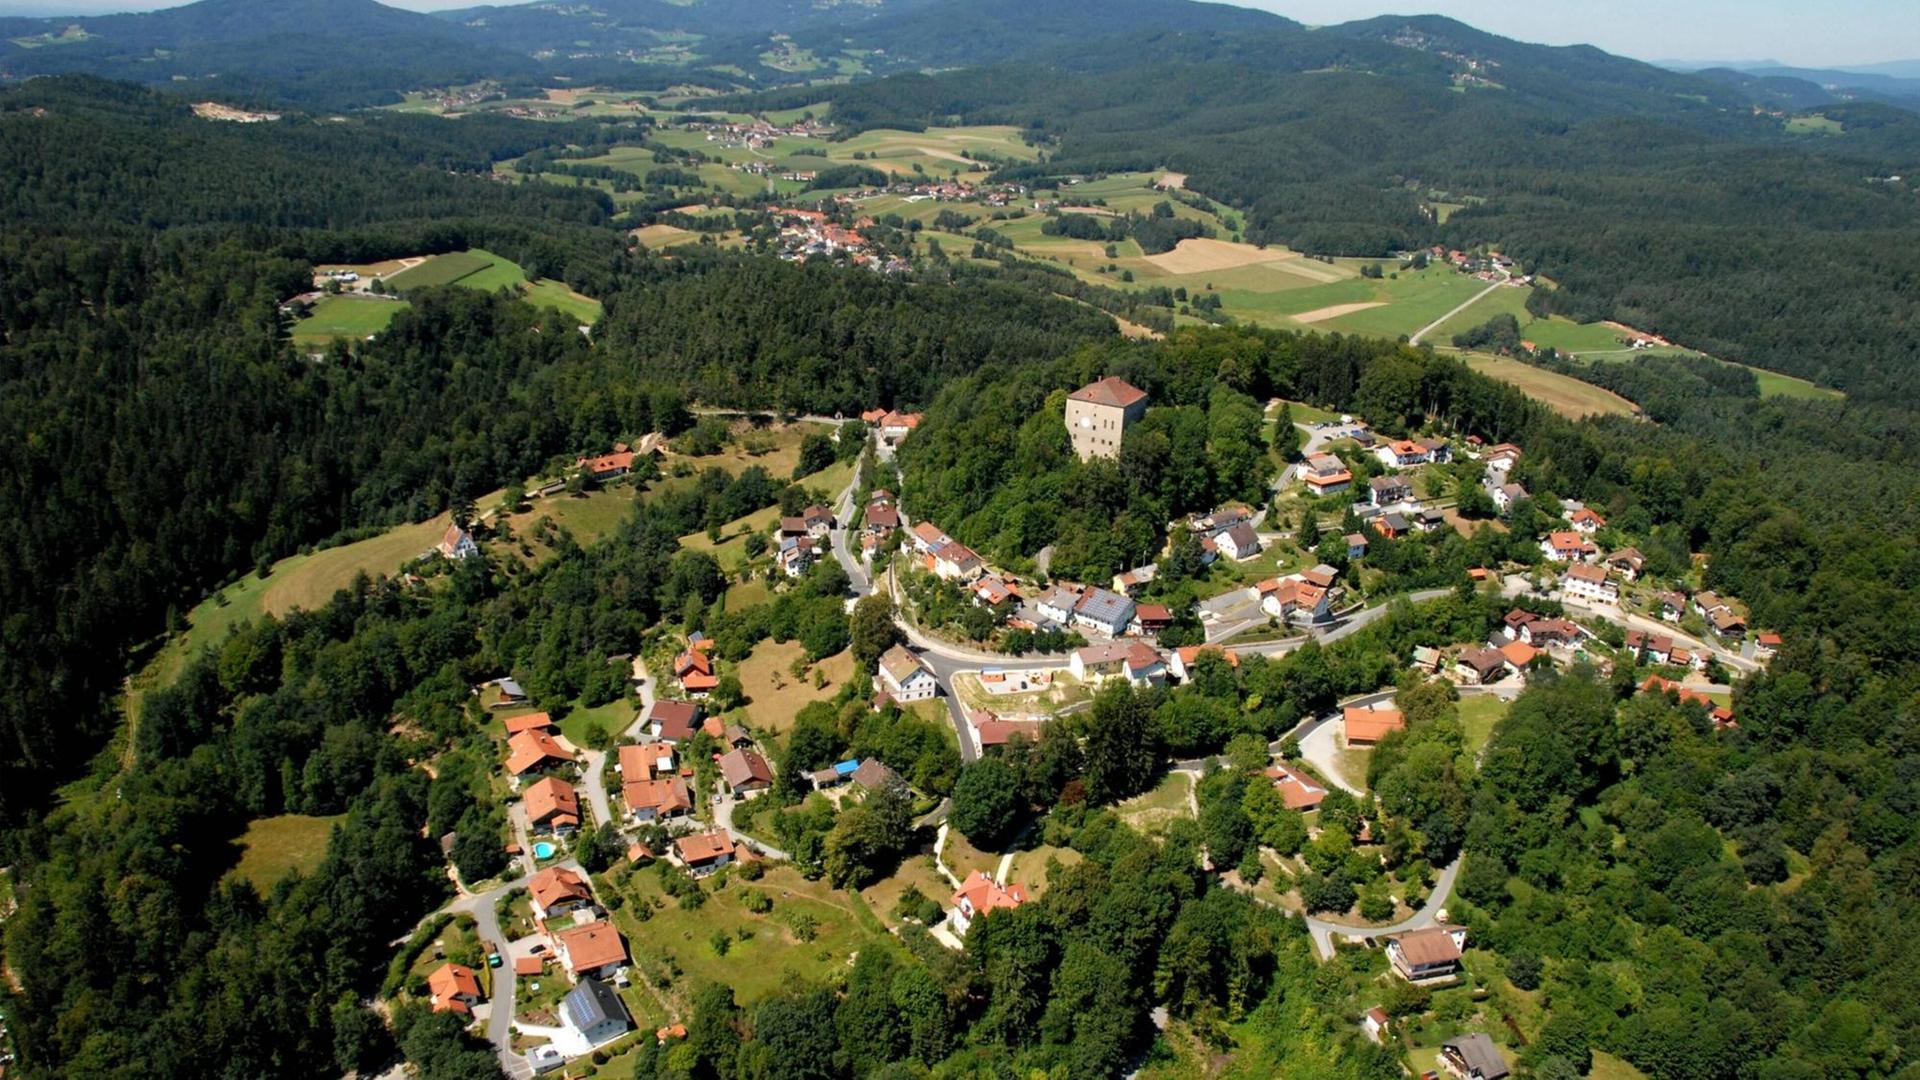 Luftbild der kleinen Gemeinde Saldenburg im Bayerischen Wald. Rings um den Ort liegen grüne Wiesen und Wälder.